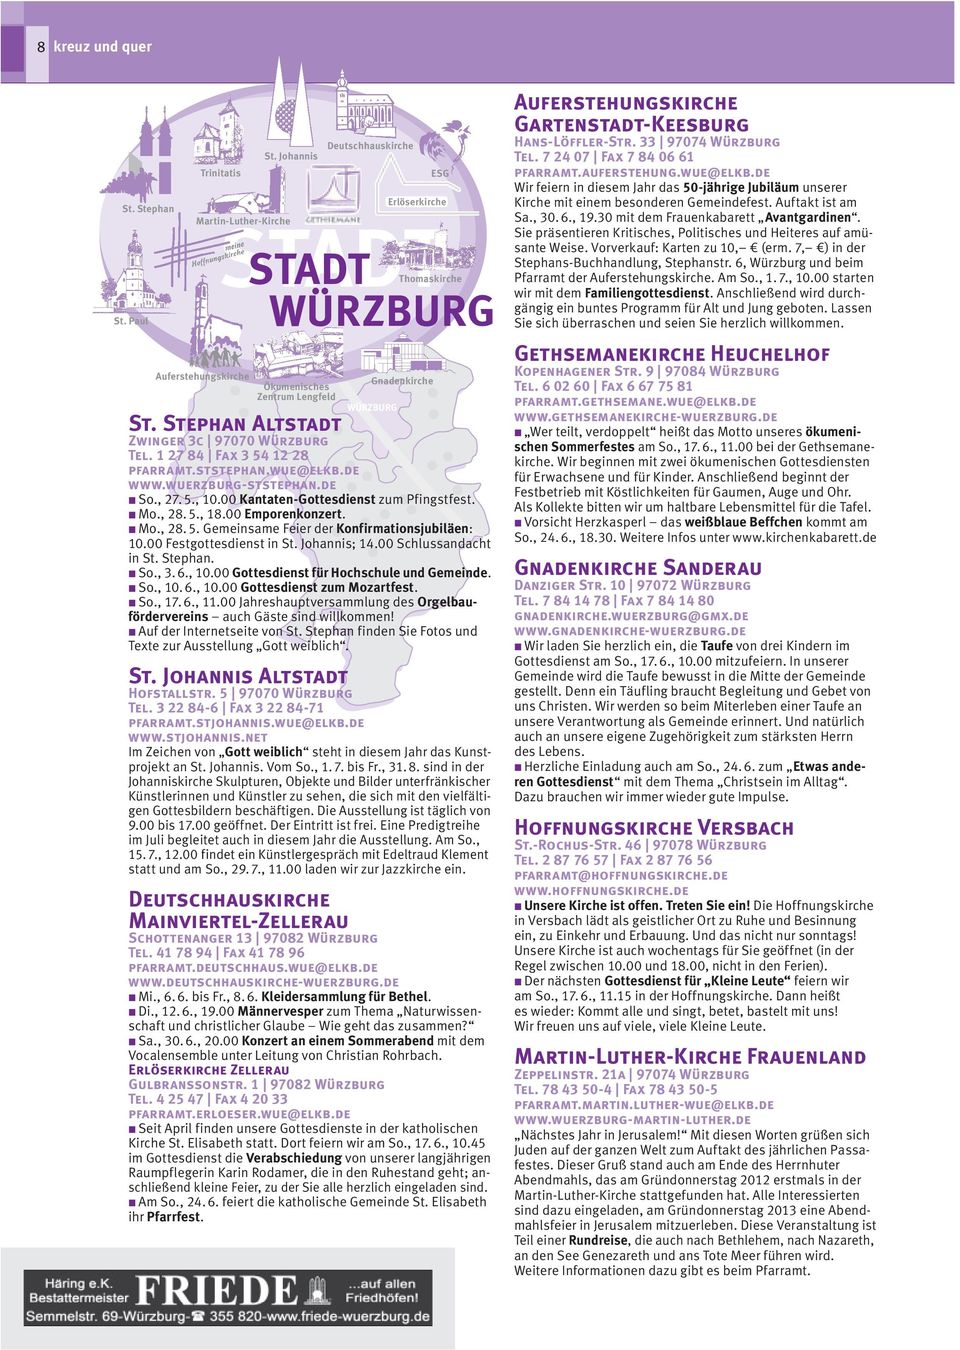 Stephan Altstadt Zwinger 3c 97070 Würzburg Tel. 1 27 84 Fax 3 54 12 28 pfarramt.ststephan.wue@elkb.de www.wuerzburg-ststephan.de n So., 27. 5., 10.00 Kantaten-Gottesdienst zum Pfingstfest. n Mo., 28.